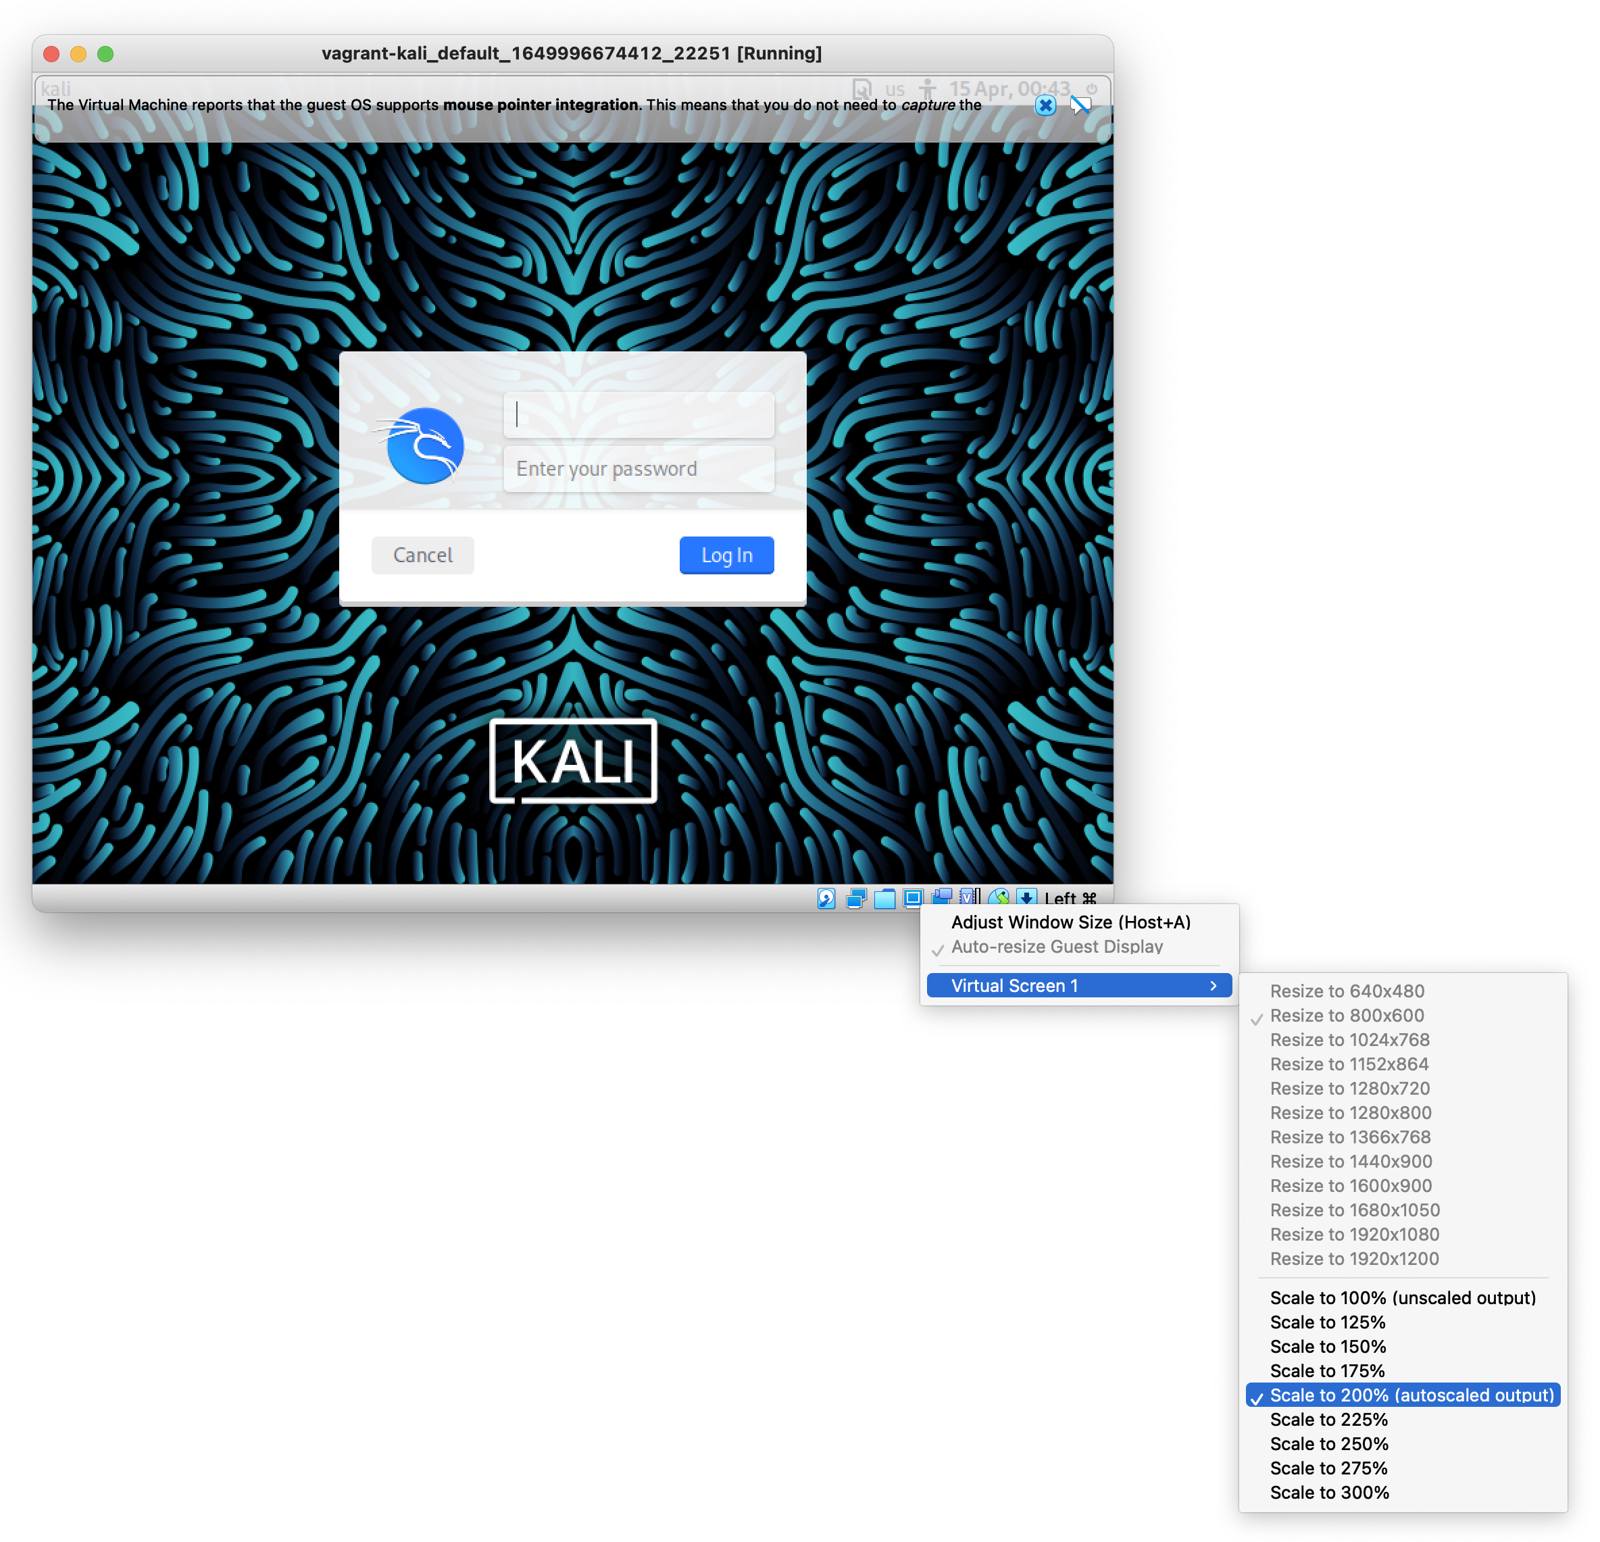 VirtualBox Kali GUI - Adjust Window Size Menu